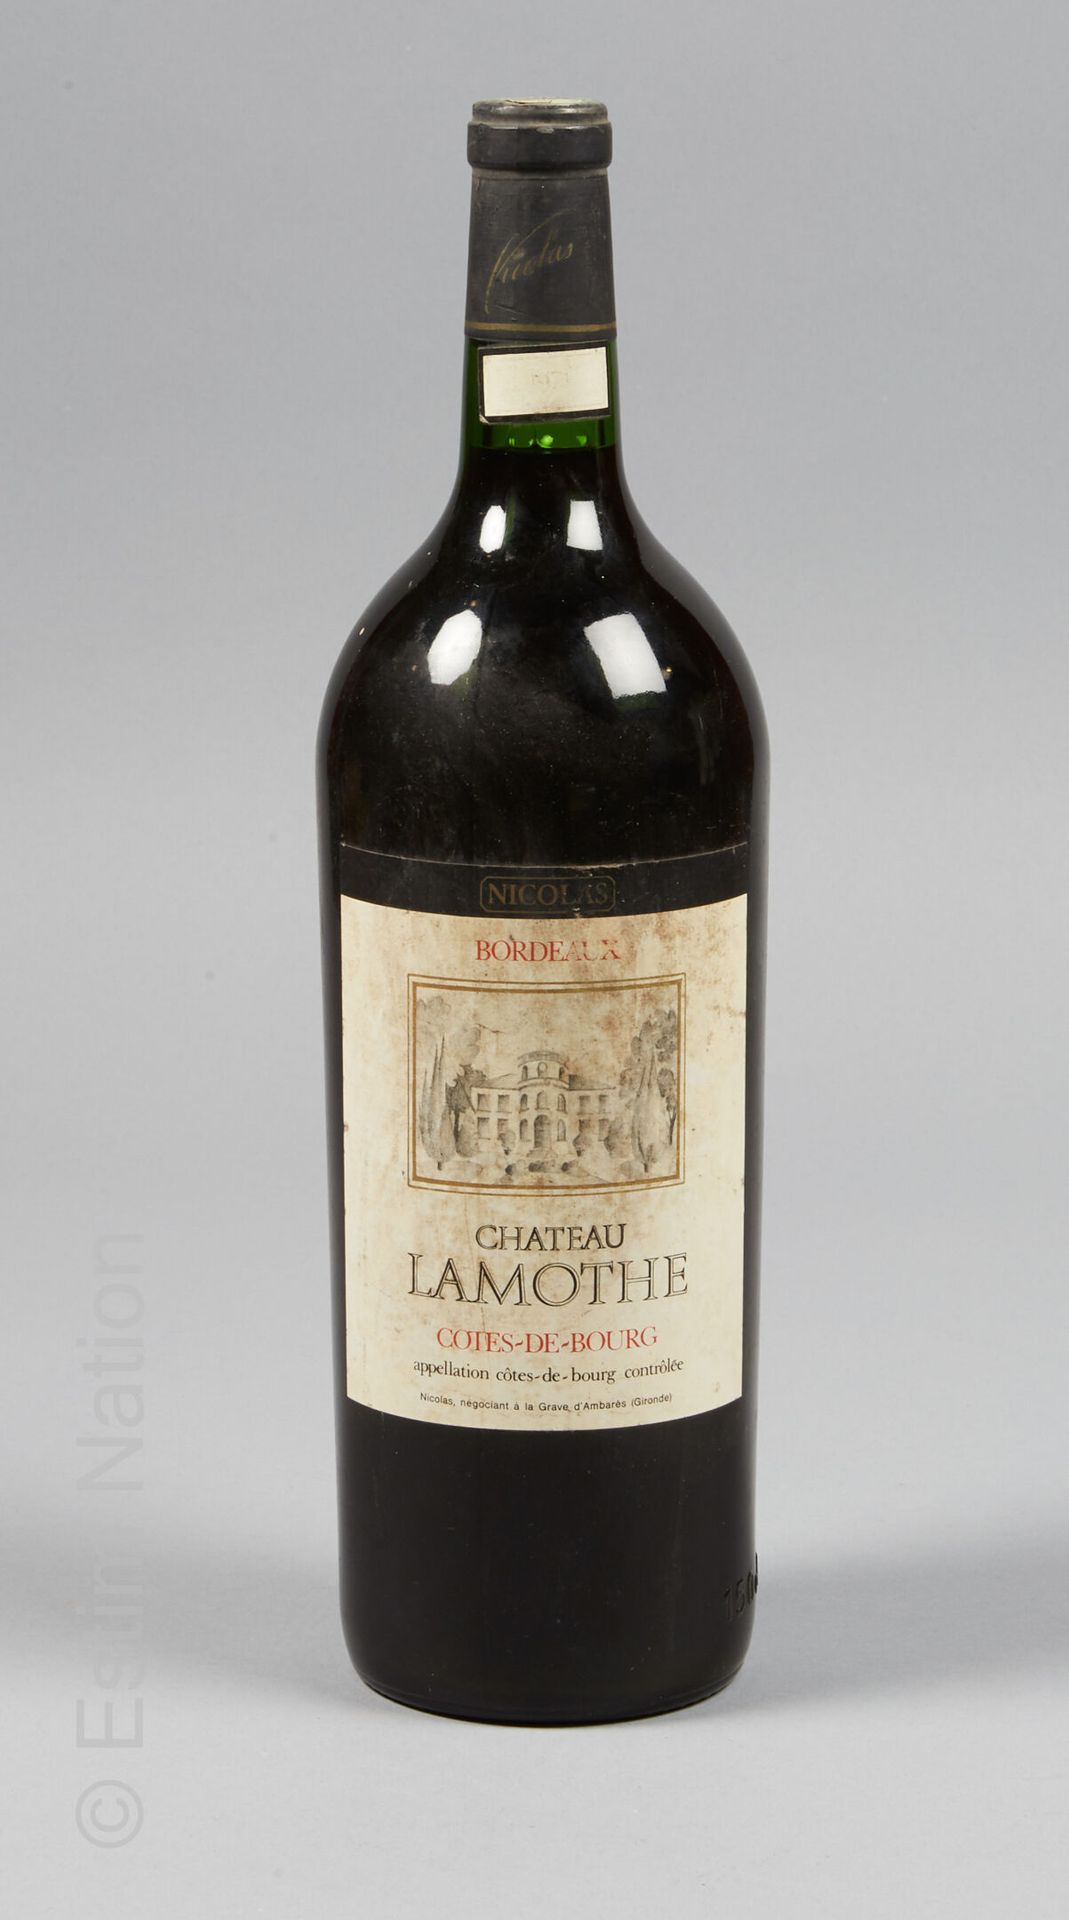 MAGNUM LAMOTHE Magnum Château Lamothe, 1971

Bezeichnung Côtes-de-Bourg contrôlé&hellip;